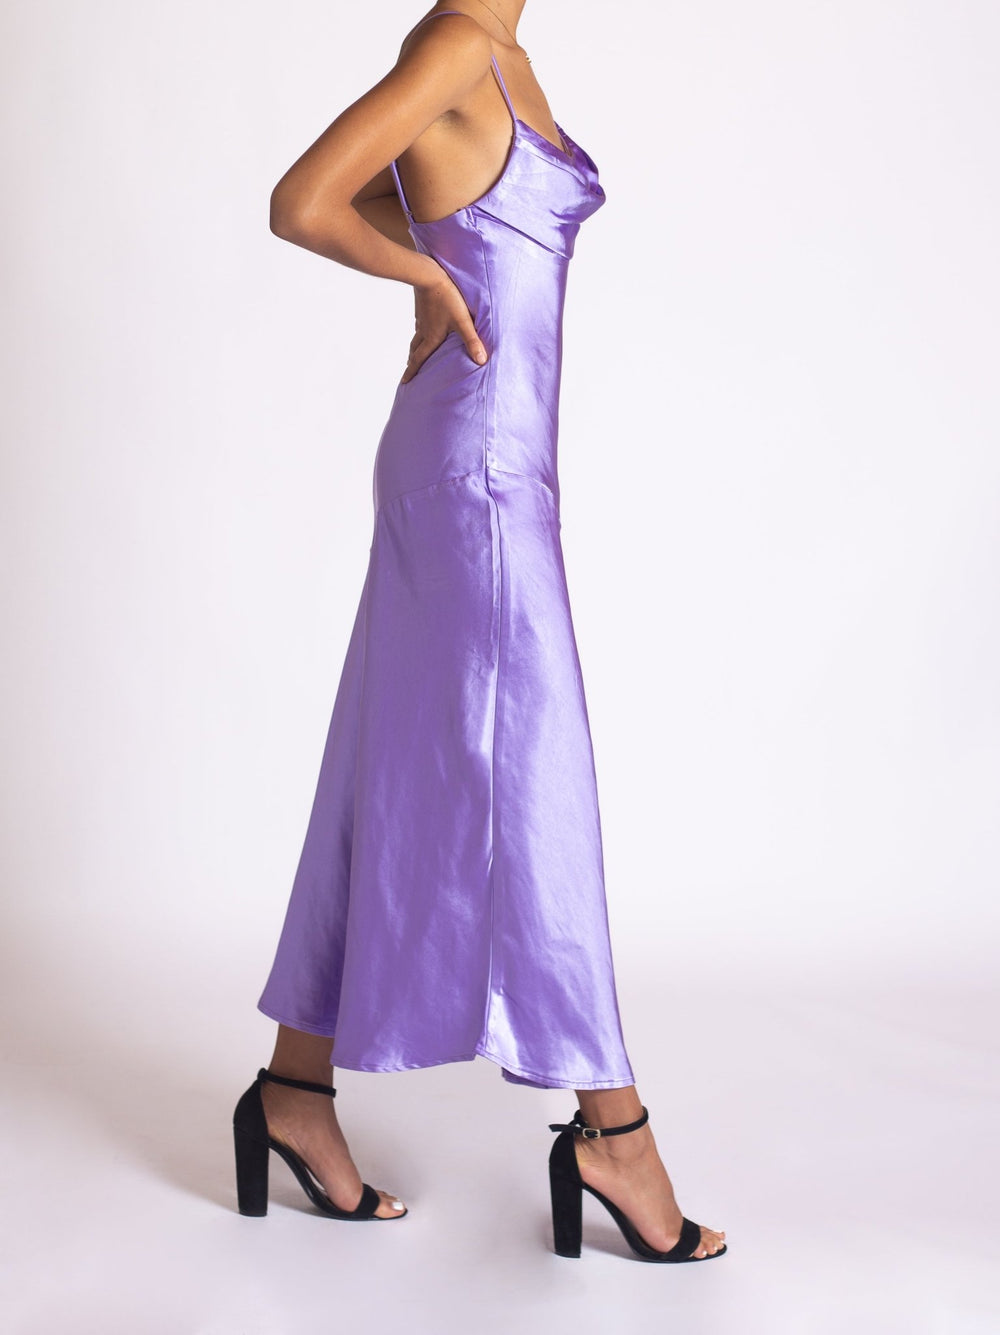 Tabata - morado lavanda - Lend the Trend renta de vestidos mexico